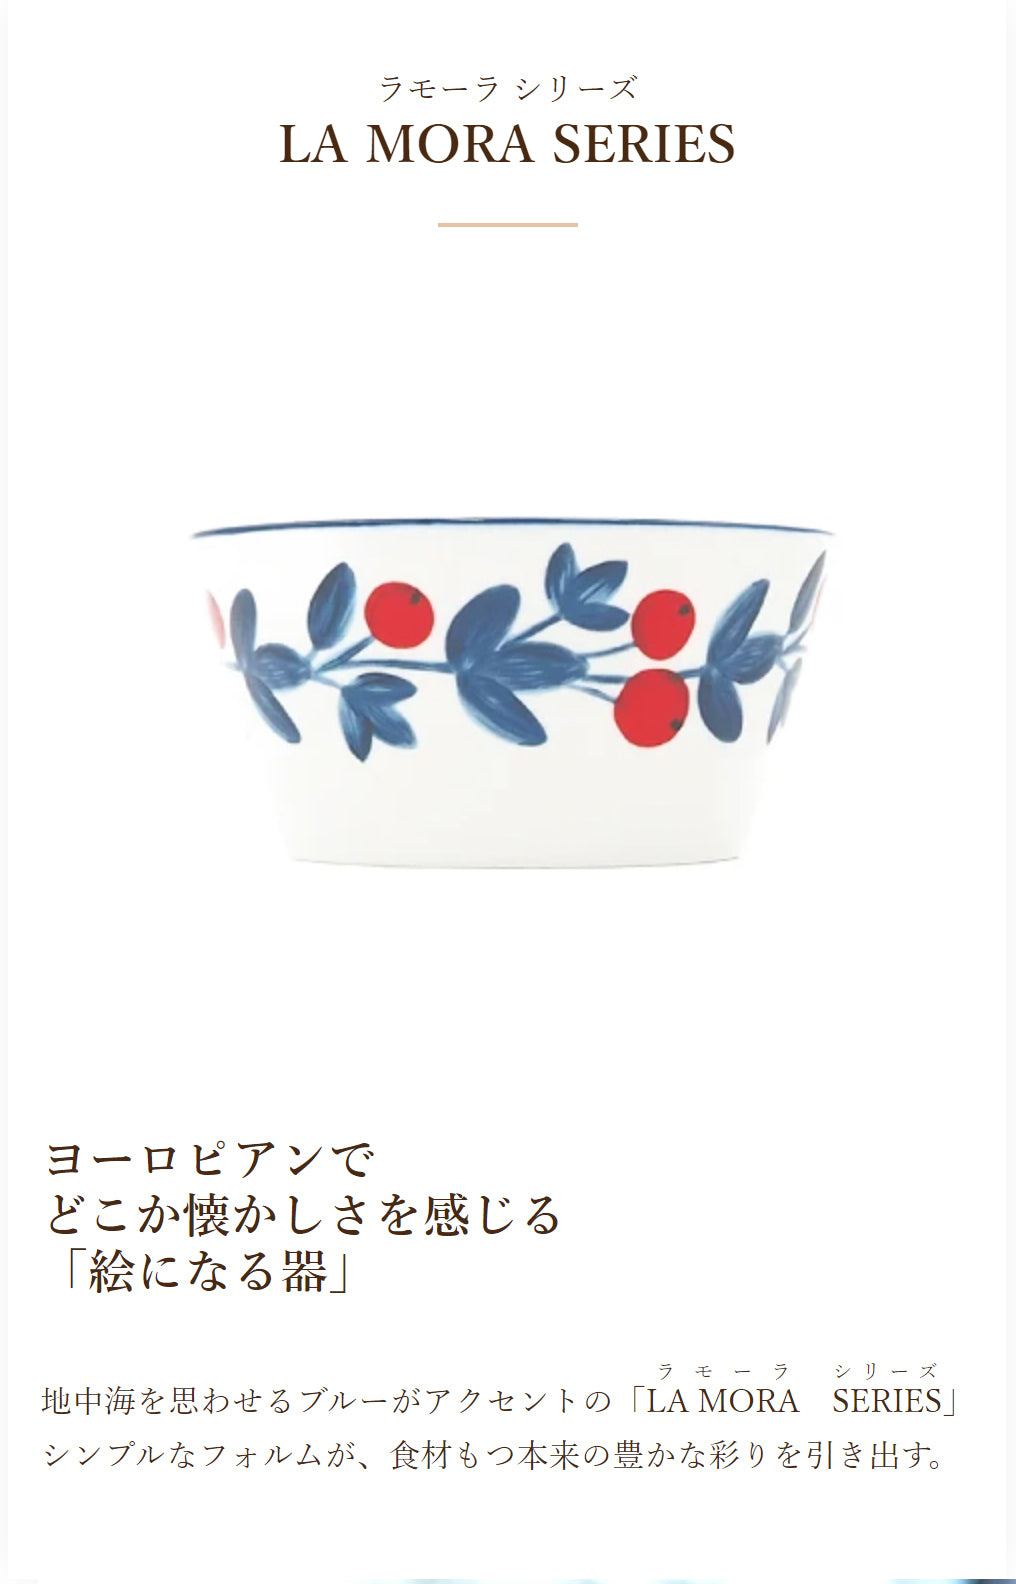 小鉢 おしゃれ おしゃれ食器 北欧食器 通販 ブランド 食器の通販 MAU SAC ラモーラ小鉢 11cm